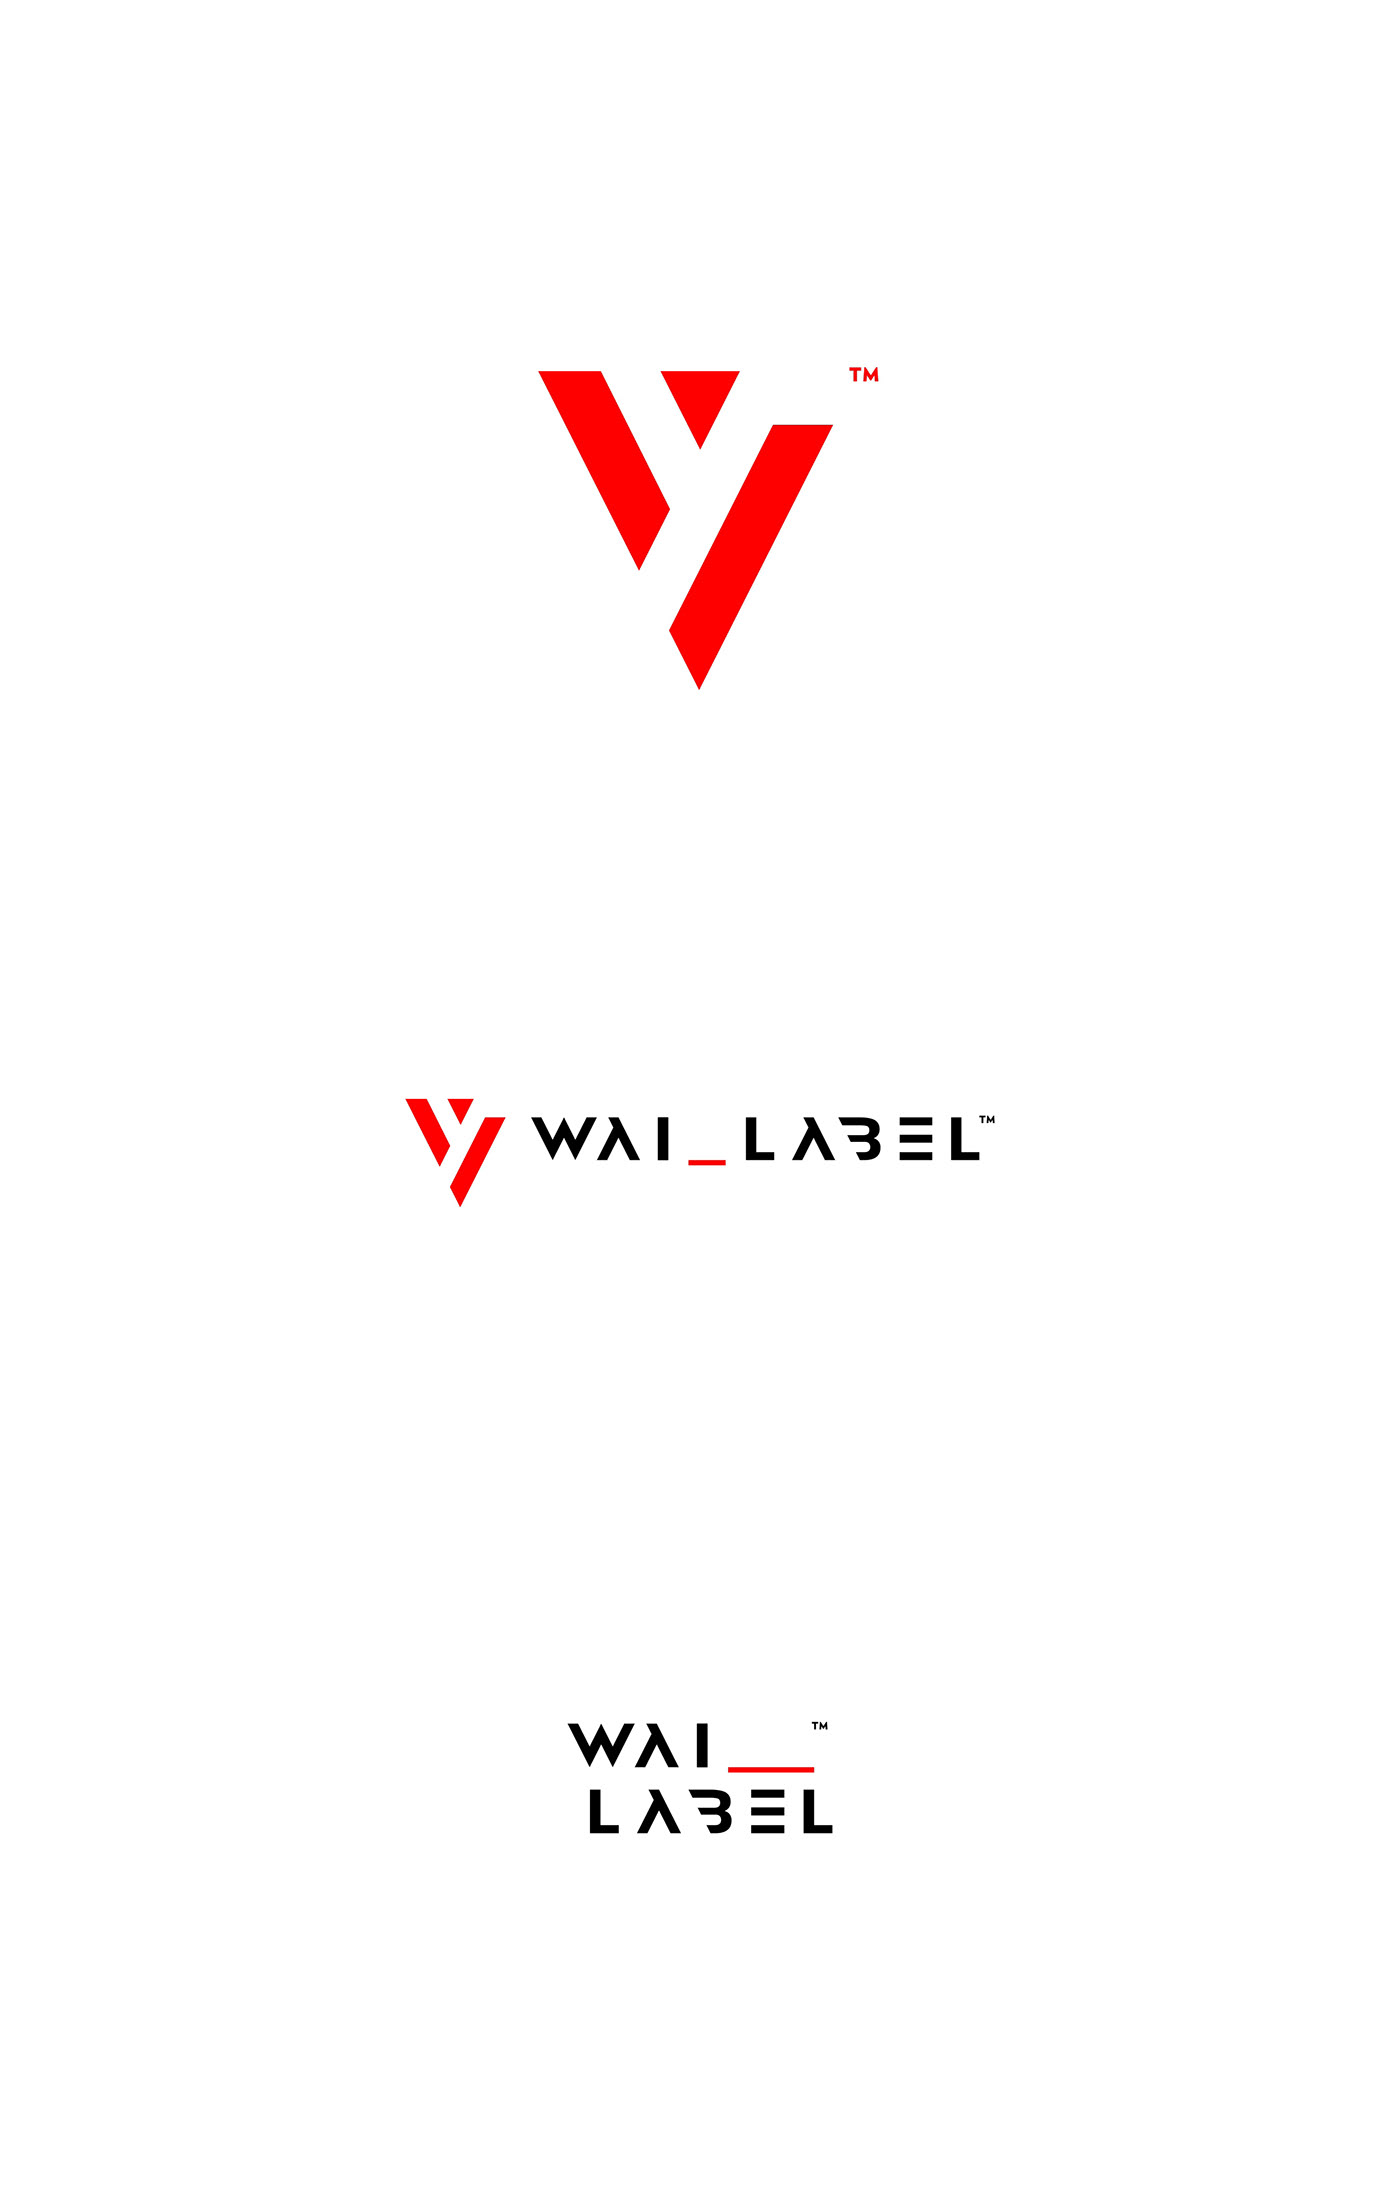 branding  font identity lettering logo Logotype marks Signage type Typeface